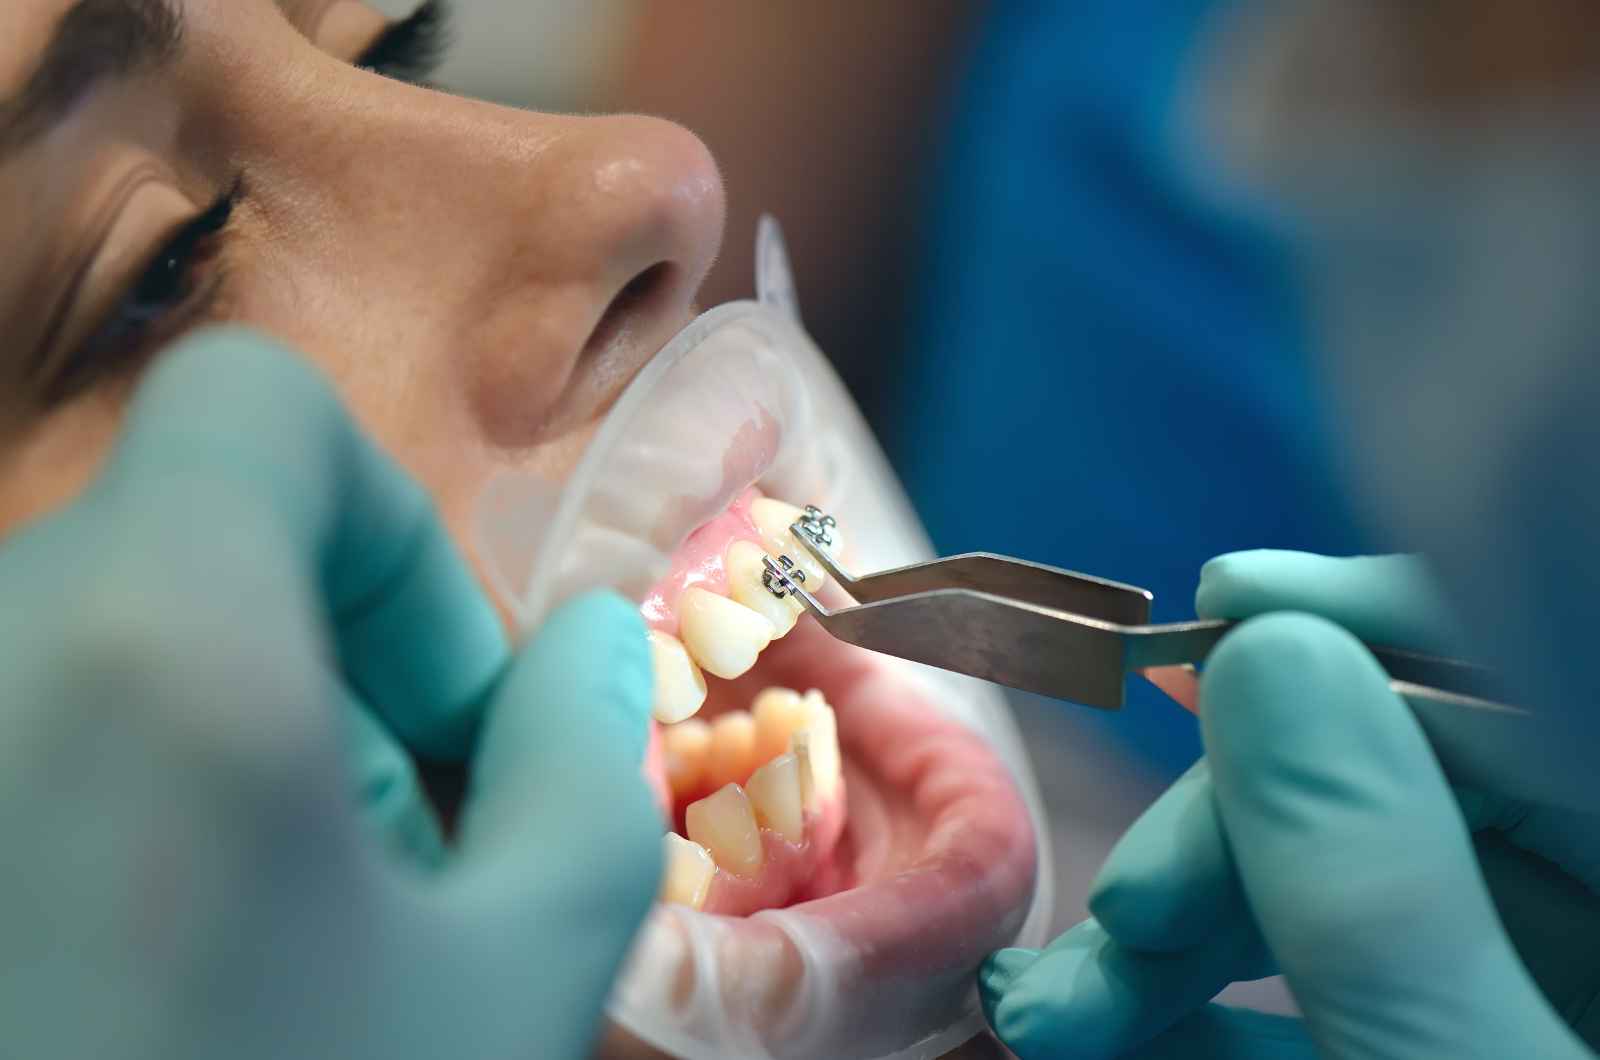 מרפאות המומחים לרפואת שיניים ואורתודונטיה